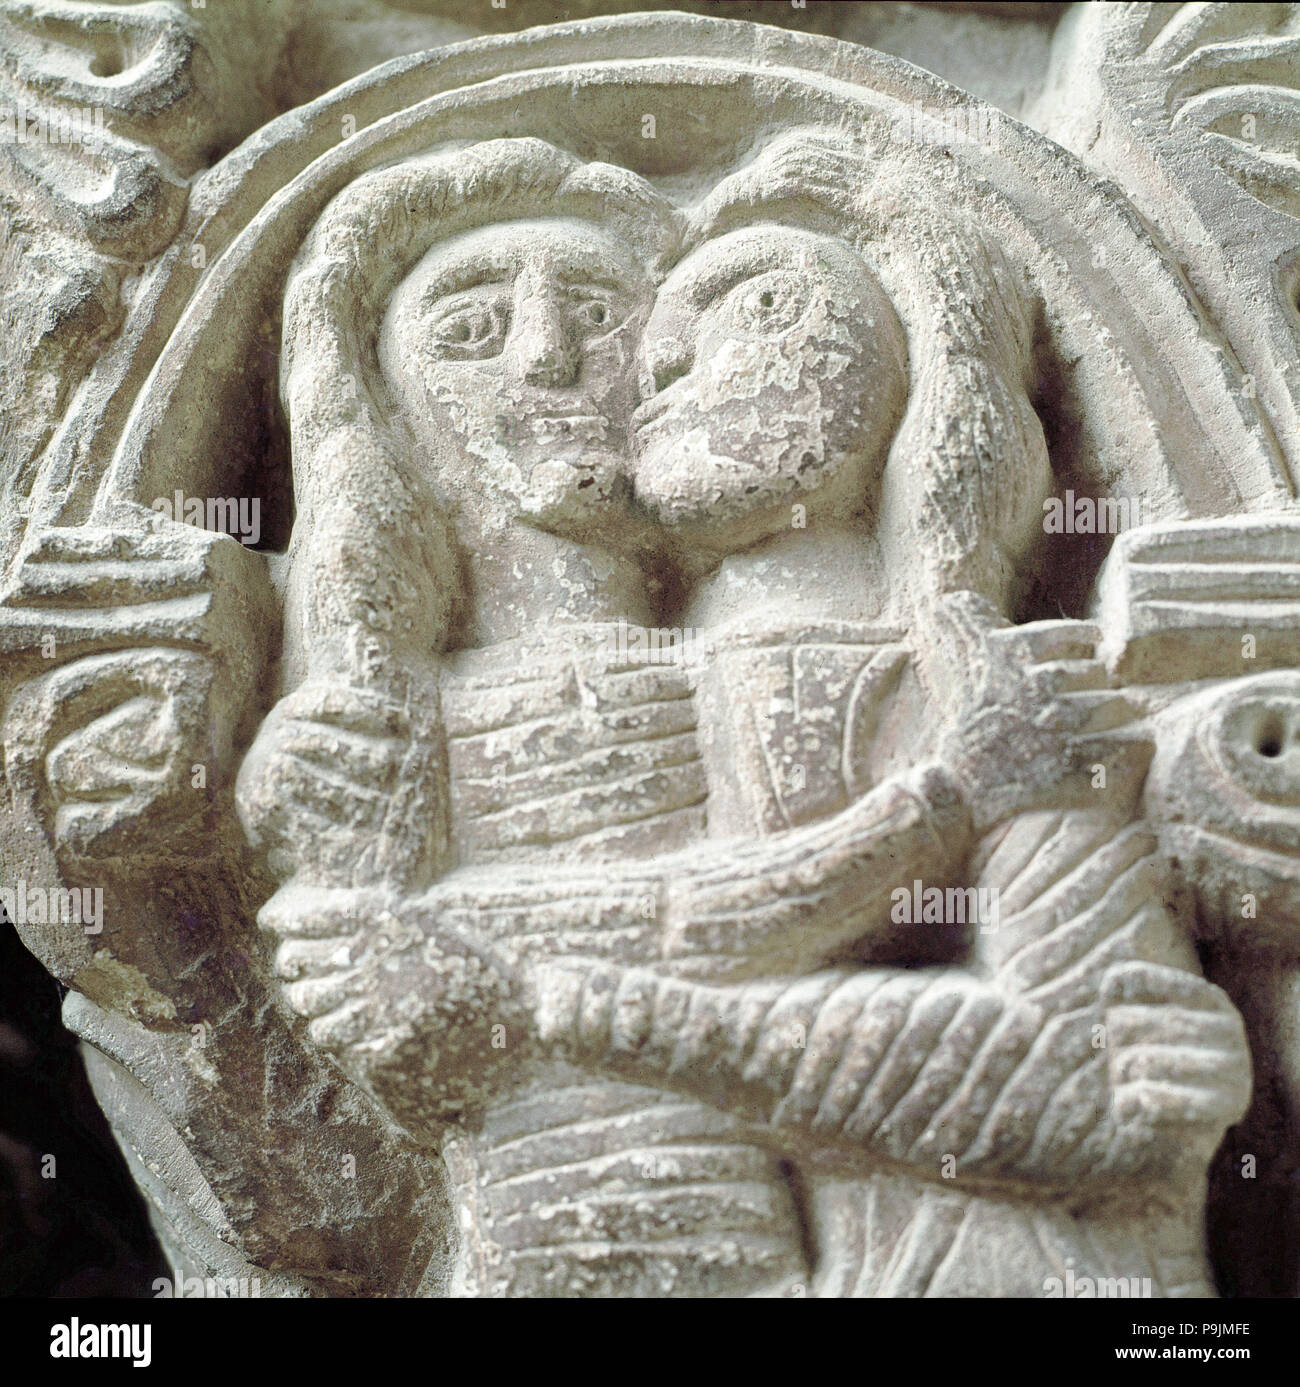 Coppia di amanti, dettaglio di una capitale nel chiostro del Monastero di Santa Maria de l'Estany. Foto Stock